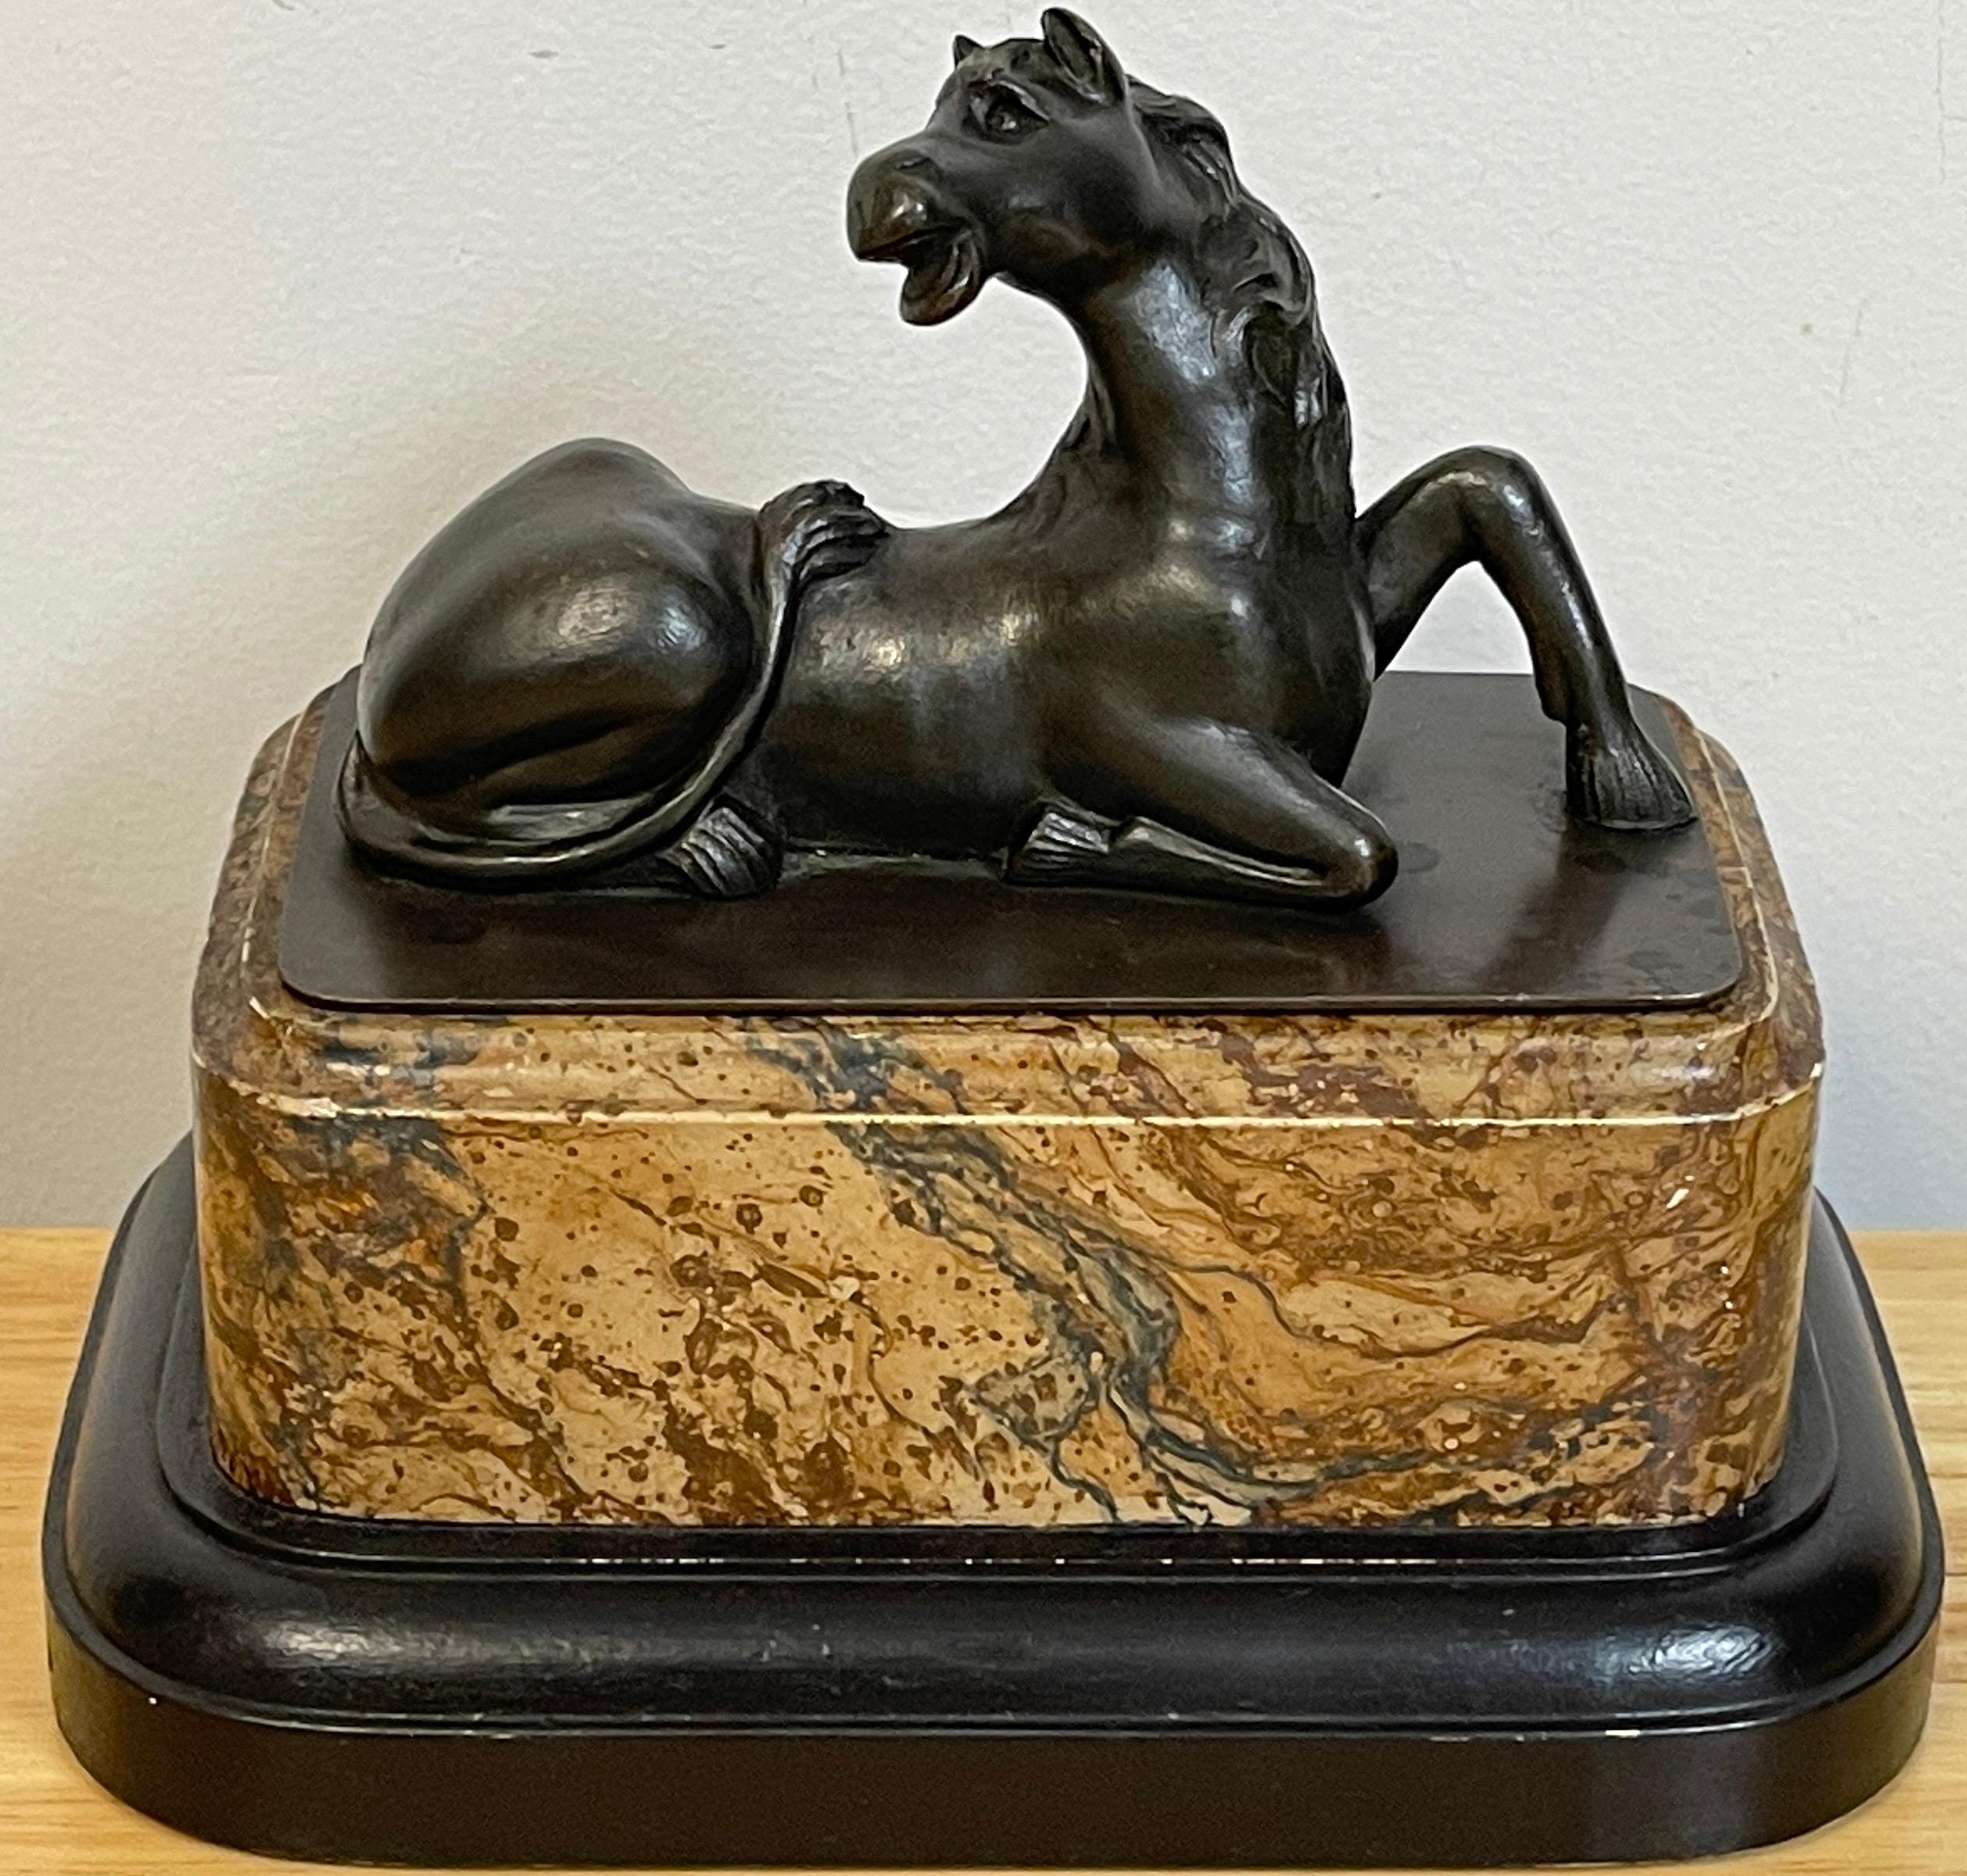 Modèle Grand Tour en bronze d'un cheval couché, moulé et modelé avec réalisme, élevé sur une base en faux marbre.
 